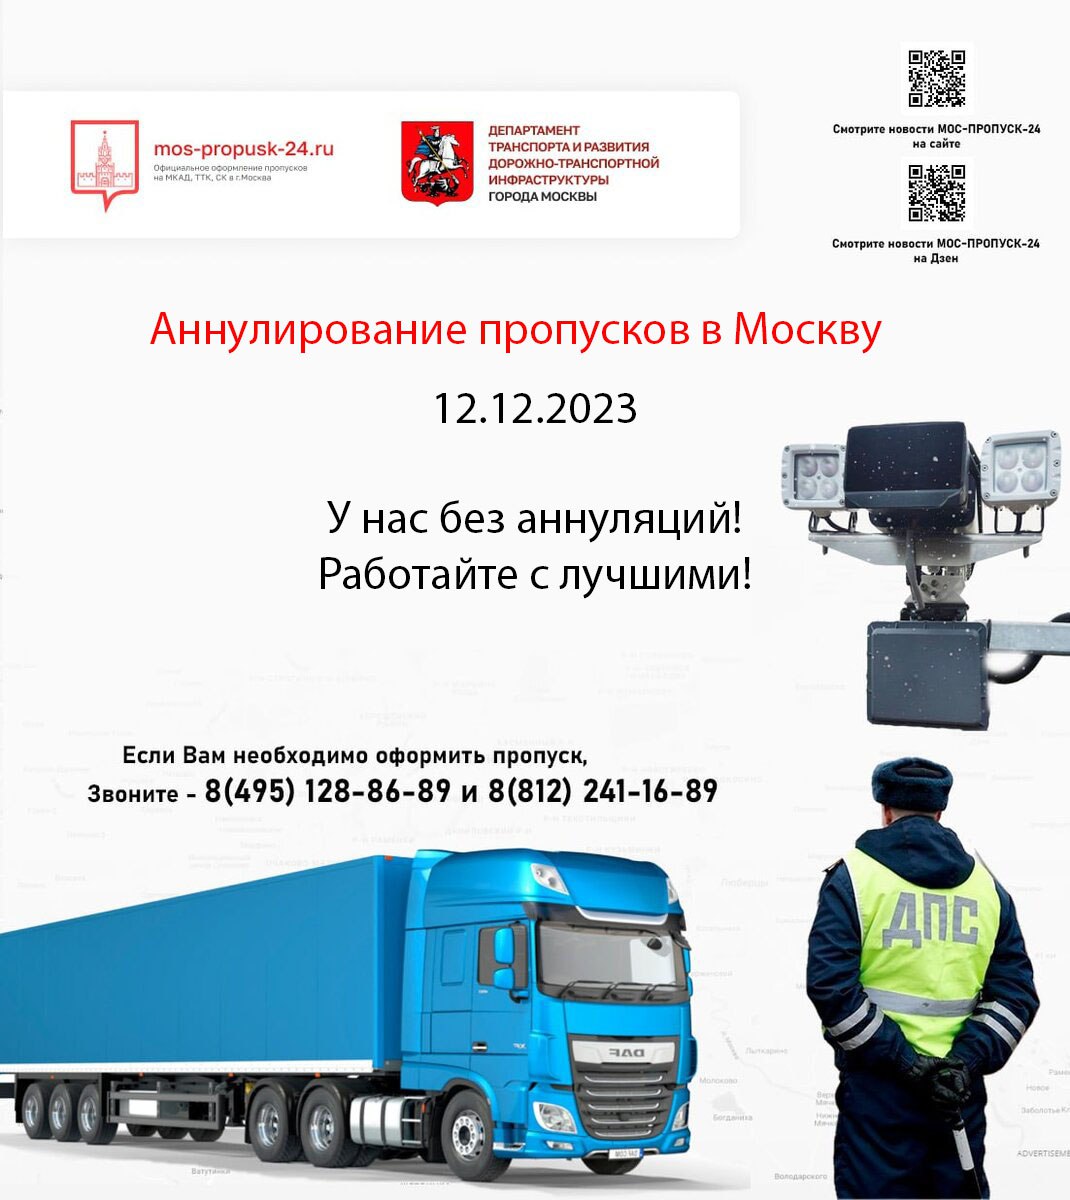 Массовое аннулирование грузовых пропусков, но только не у МОС-ПРОПУСК-24!